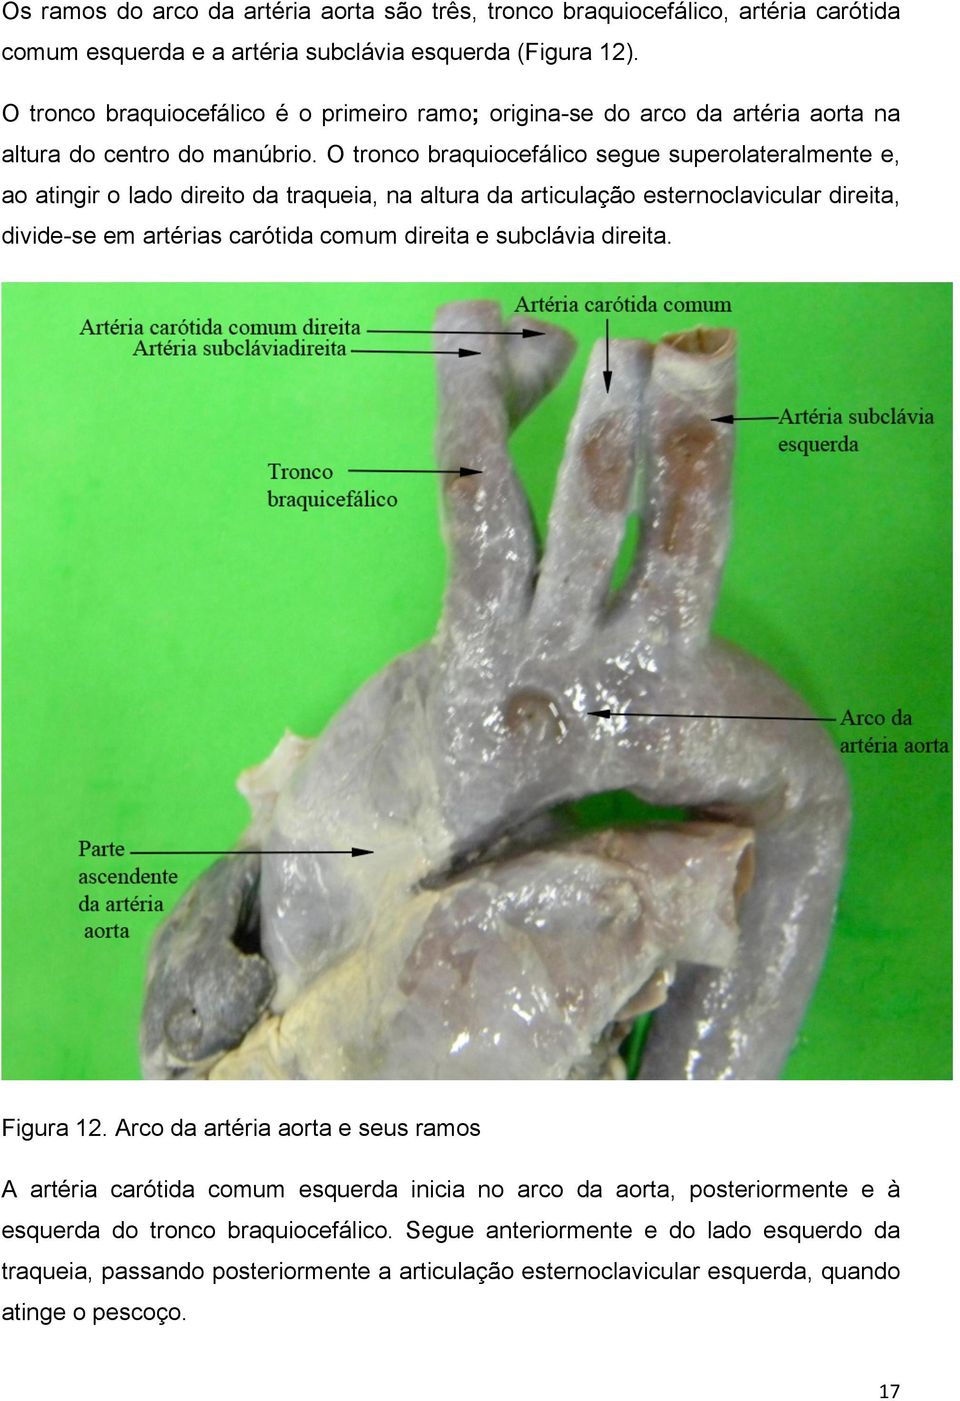 O tronco braquiocefálico segue superolateralmente e, ao atingir o lado direito da traqueia, na altura da articulação esternoclavicular direita, divide-se em artérias carótida comum direita e